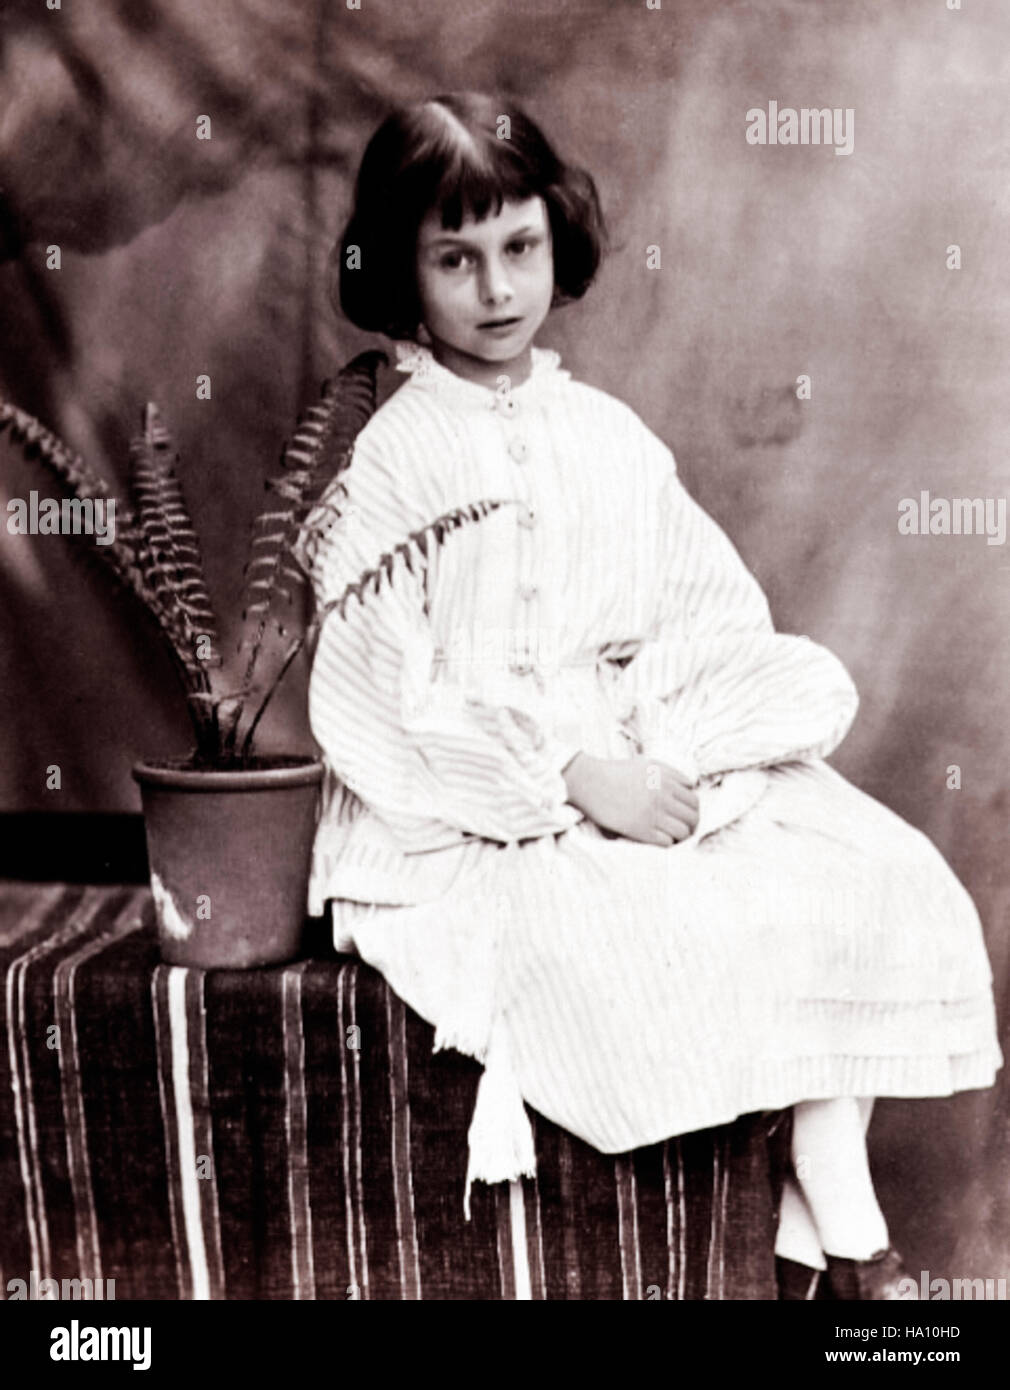 Alice Liddell (1852-1934) de 7 años, fuente de inspiración de las aventuras de Alicia en el país de las maravillas por Lewis Carroll, fotografía por Charles Lutwidge Dodgson (aka Lewis Carroll) en 1860. Foto de stock